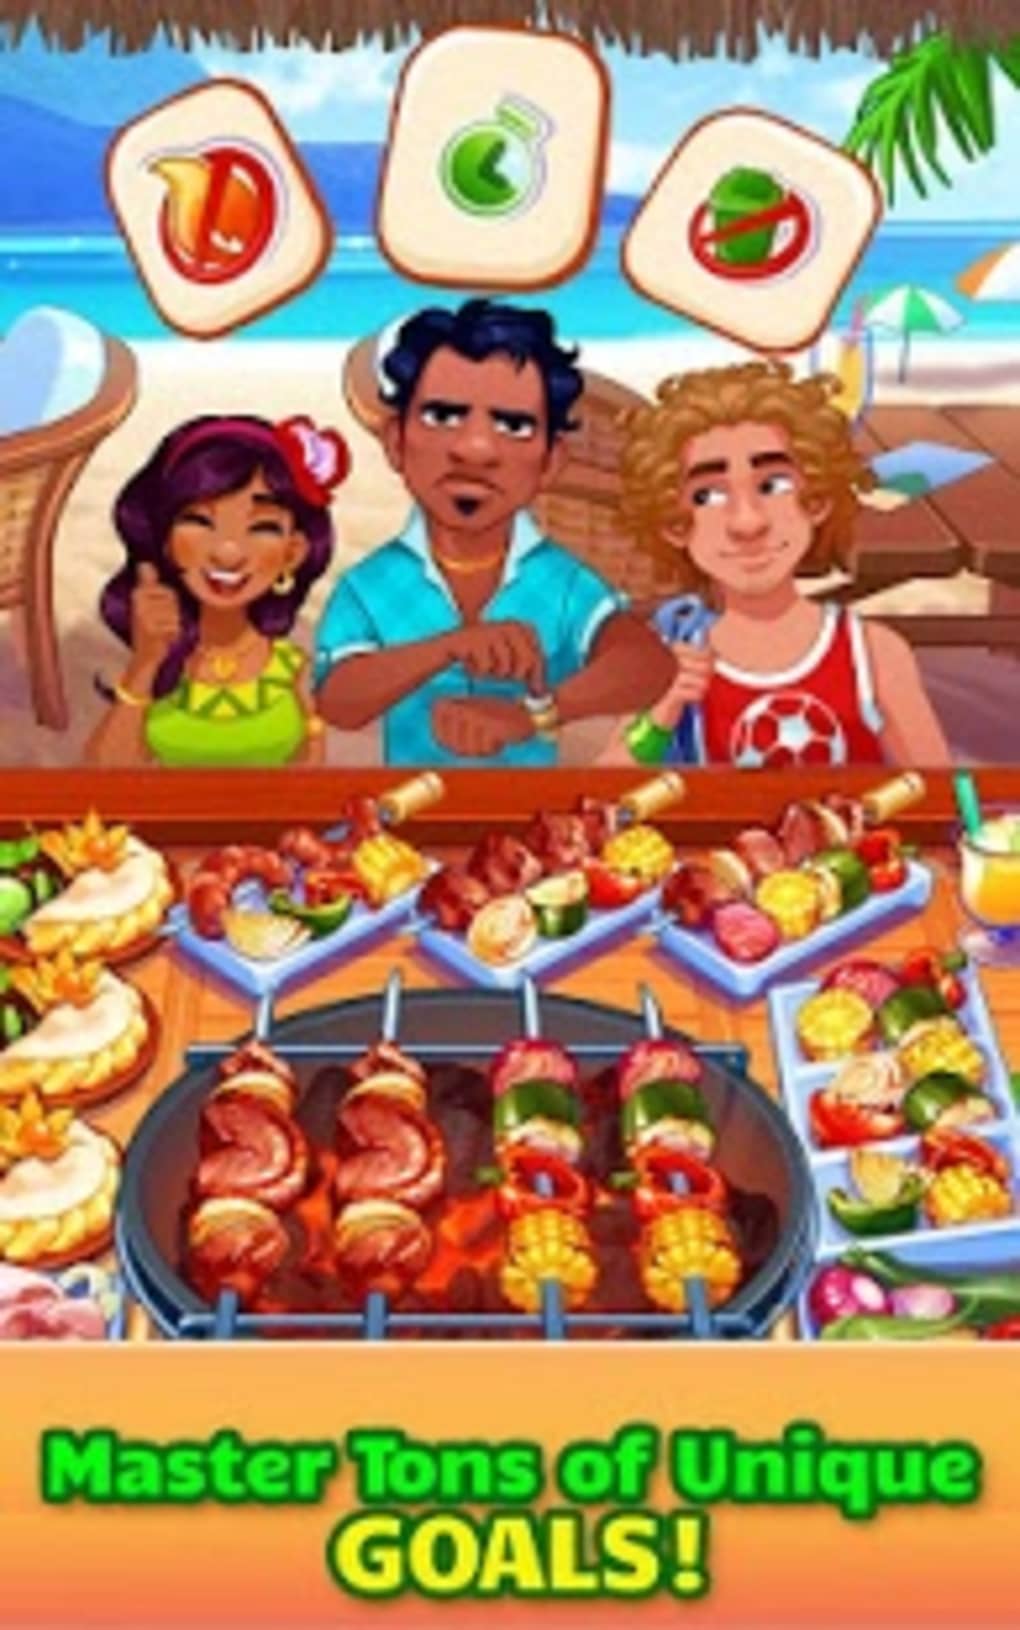 Cooking Craze: juego de chef - Aplicaciones en Google Play